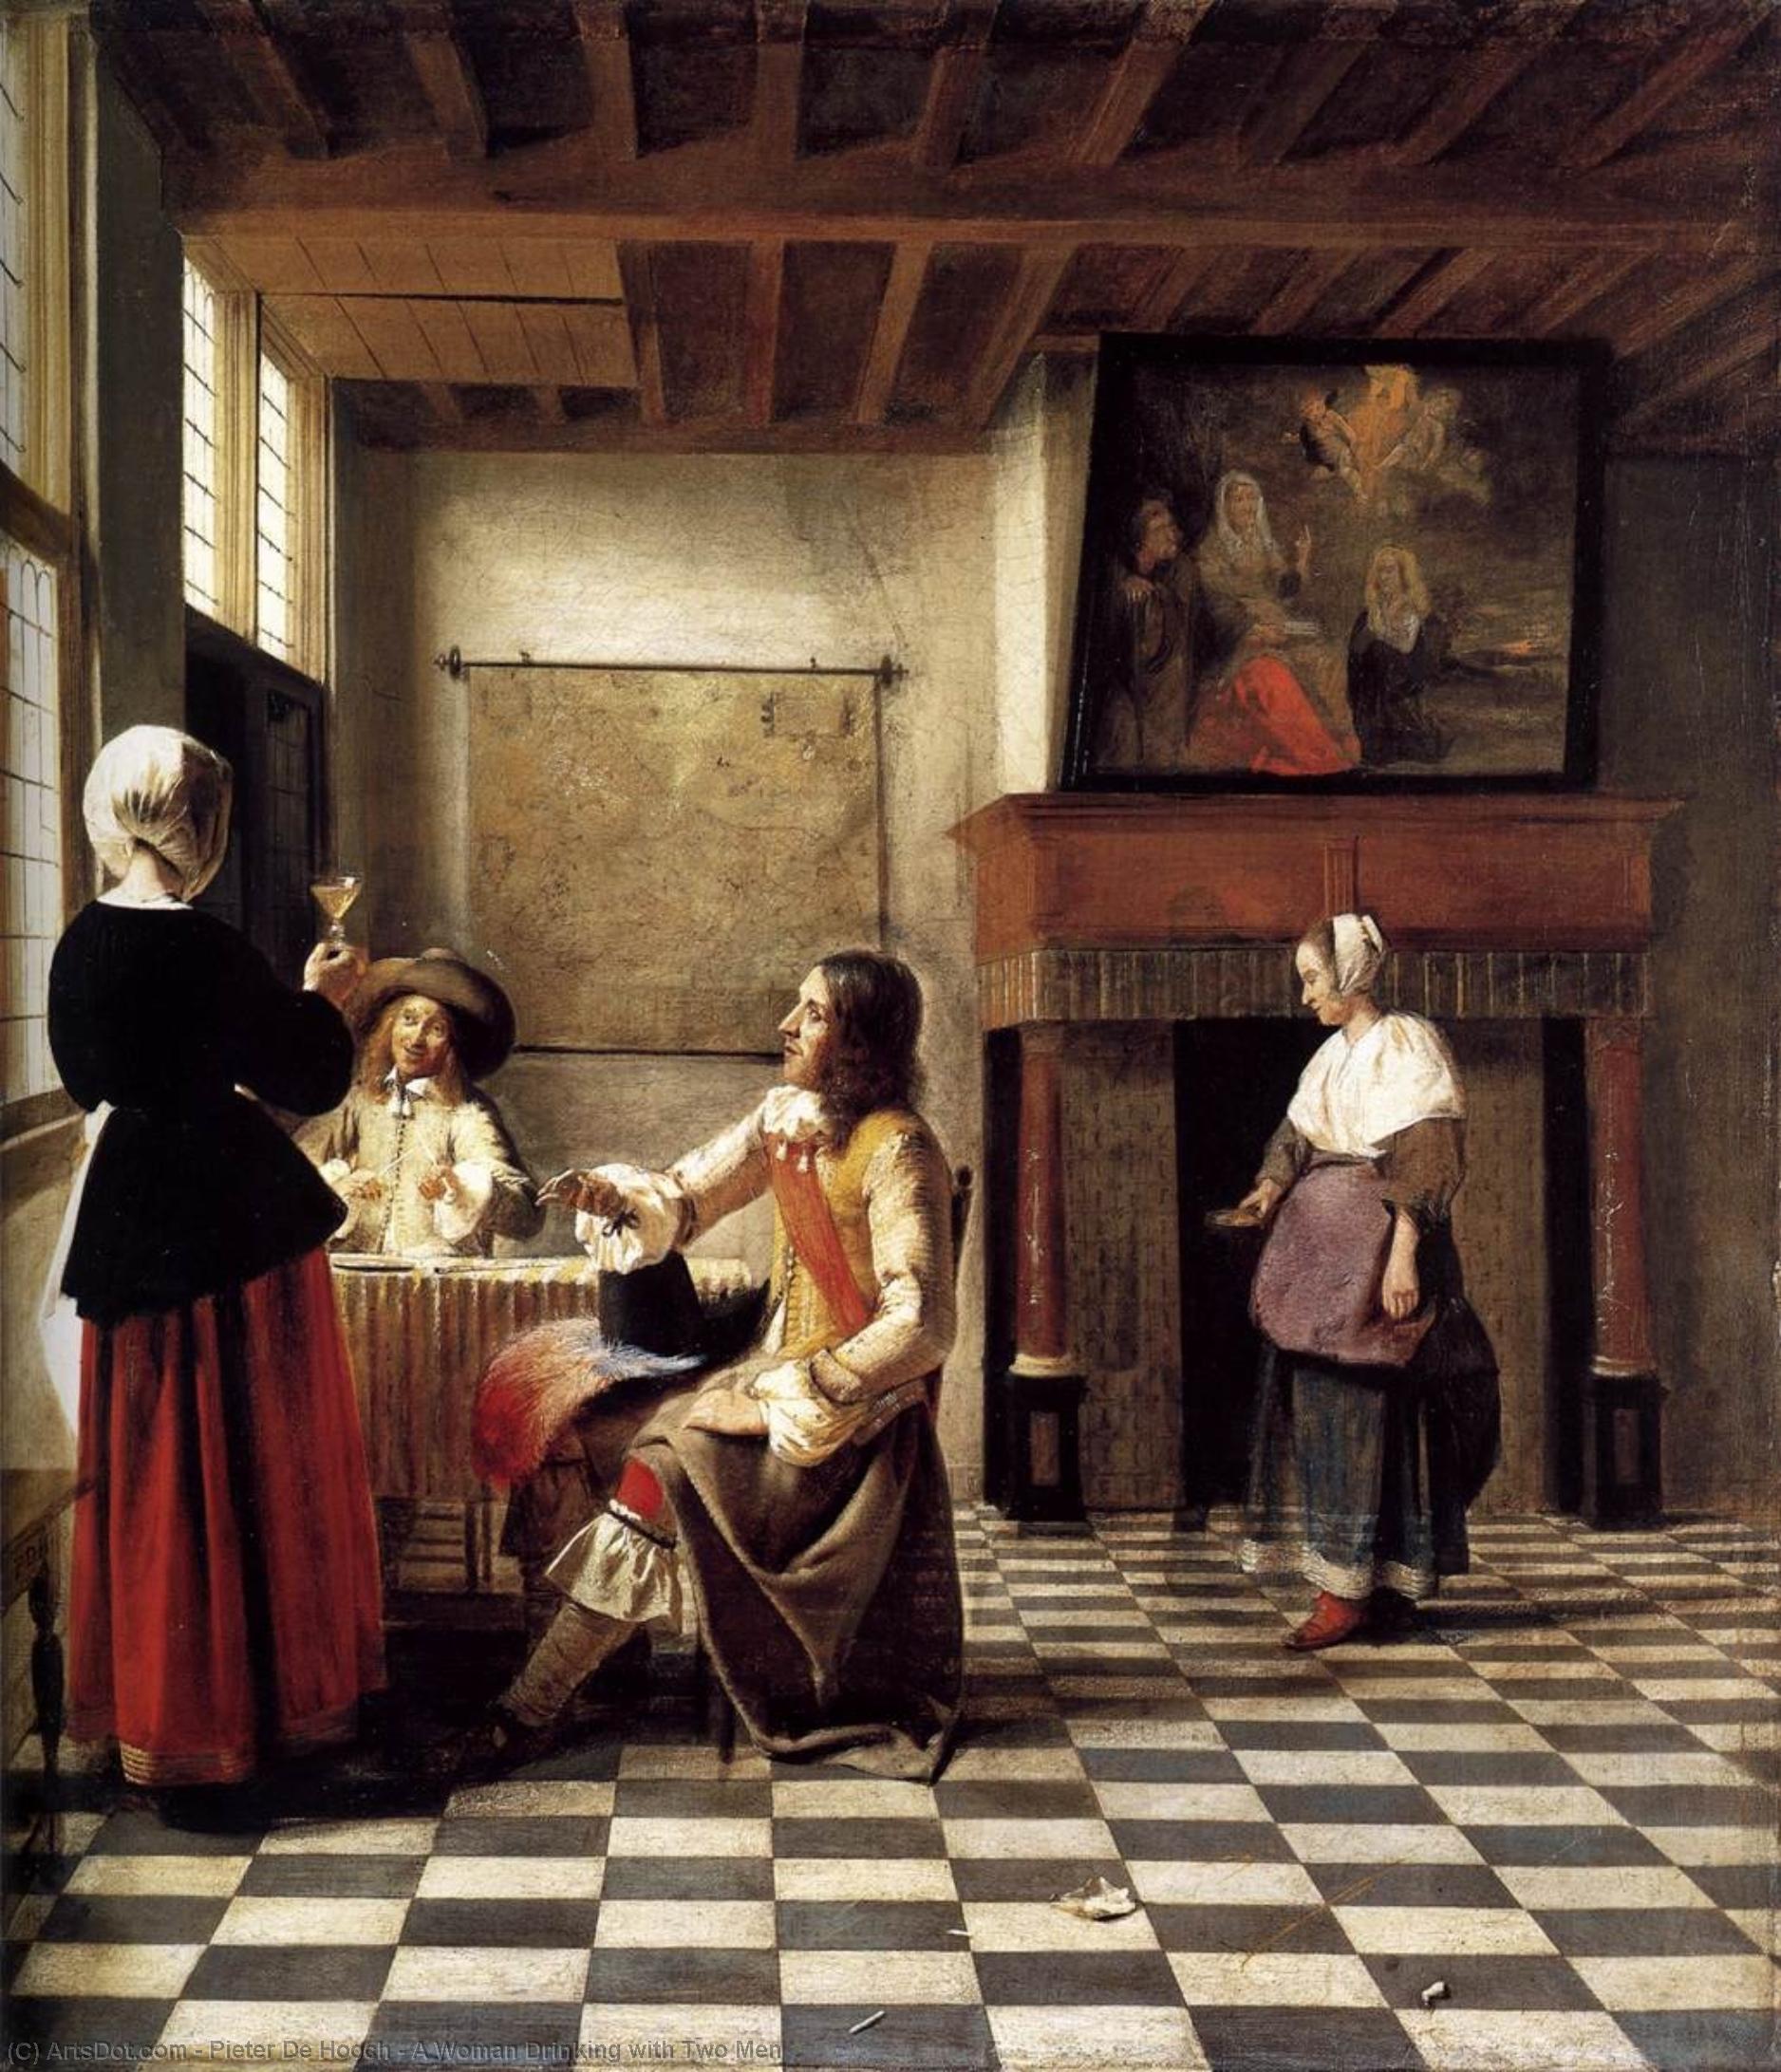 WikiOO.org - Encyclopedia of Fine Arts - Lukisan, Artwork Pieter De Hooch - A Woman Drinking with Two Men